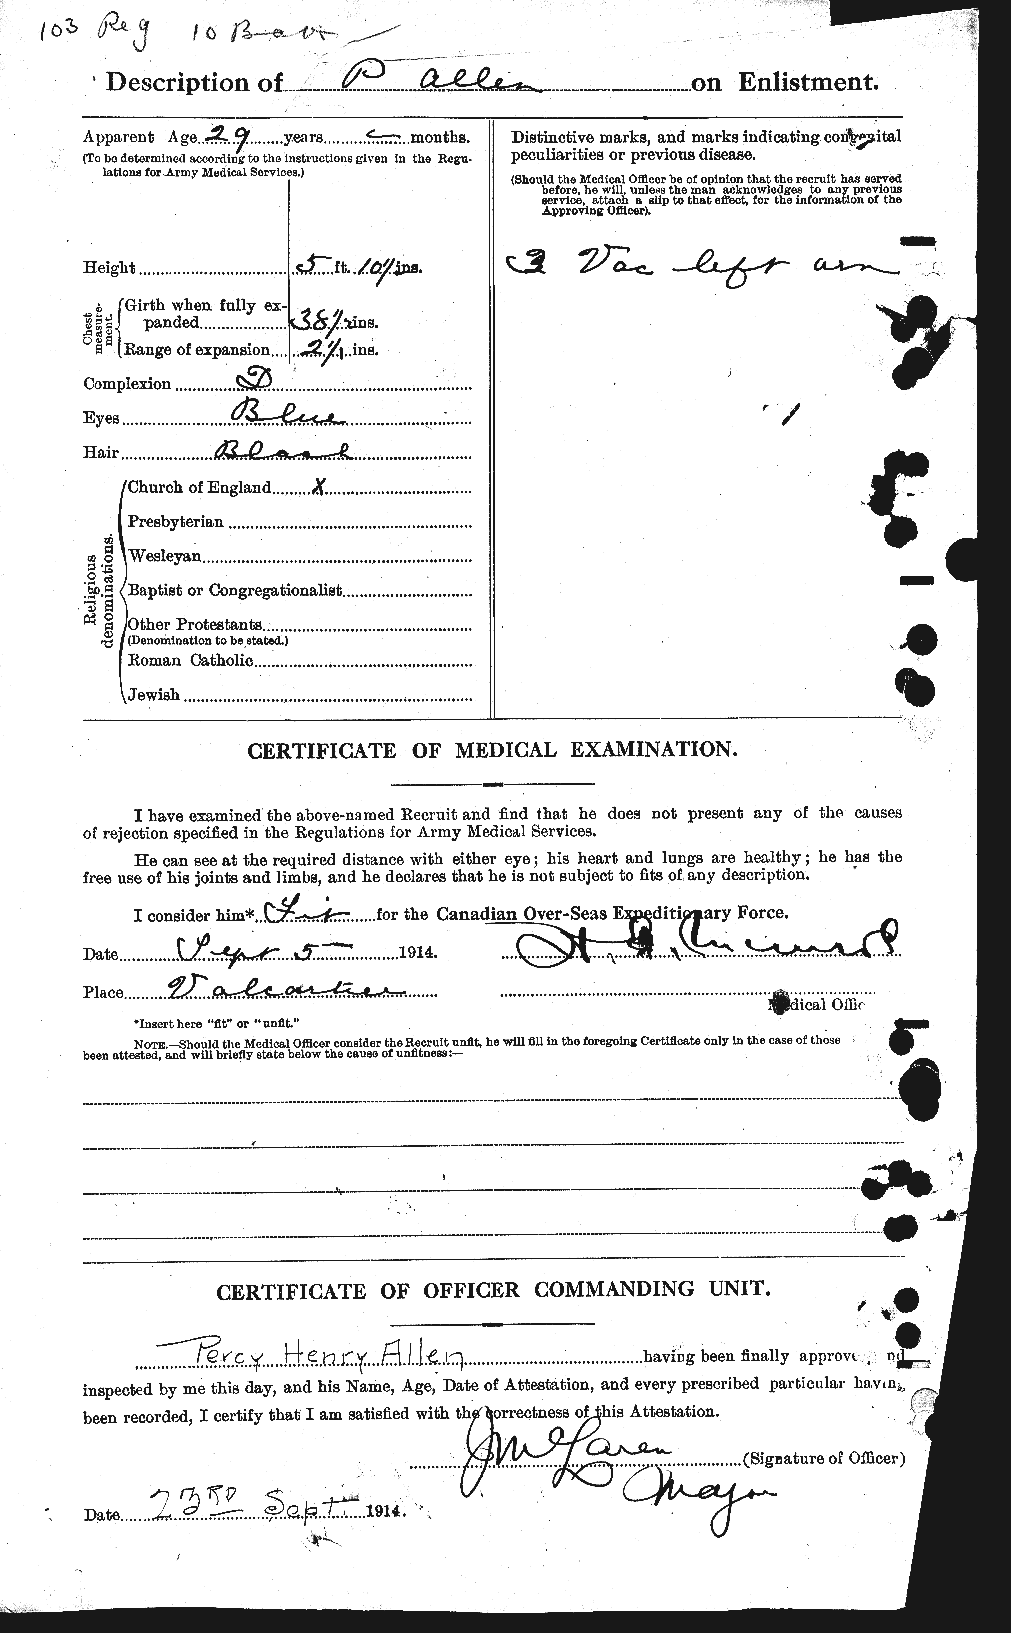 Dossiers du Personnel de la Première Guerre mondiale - CEC 207103b